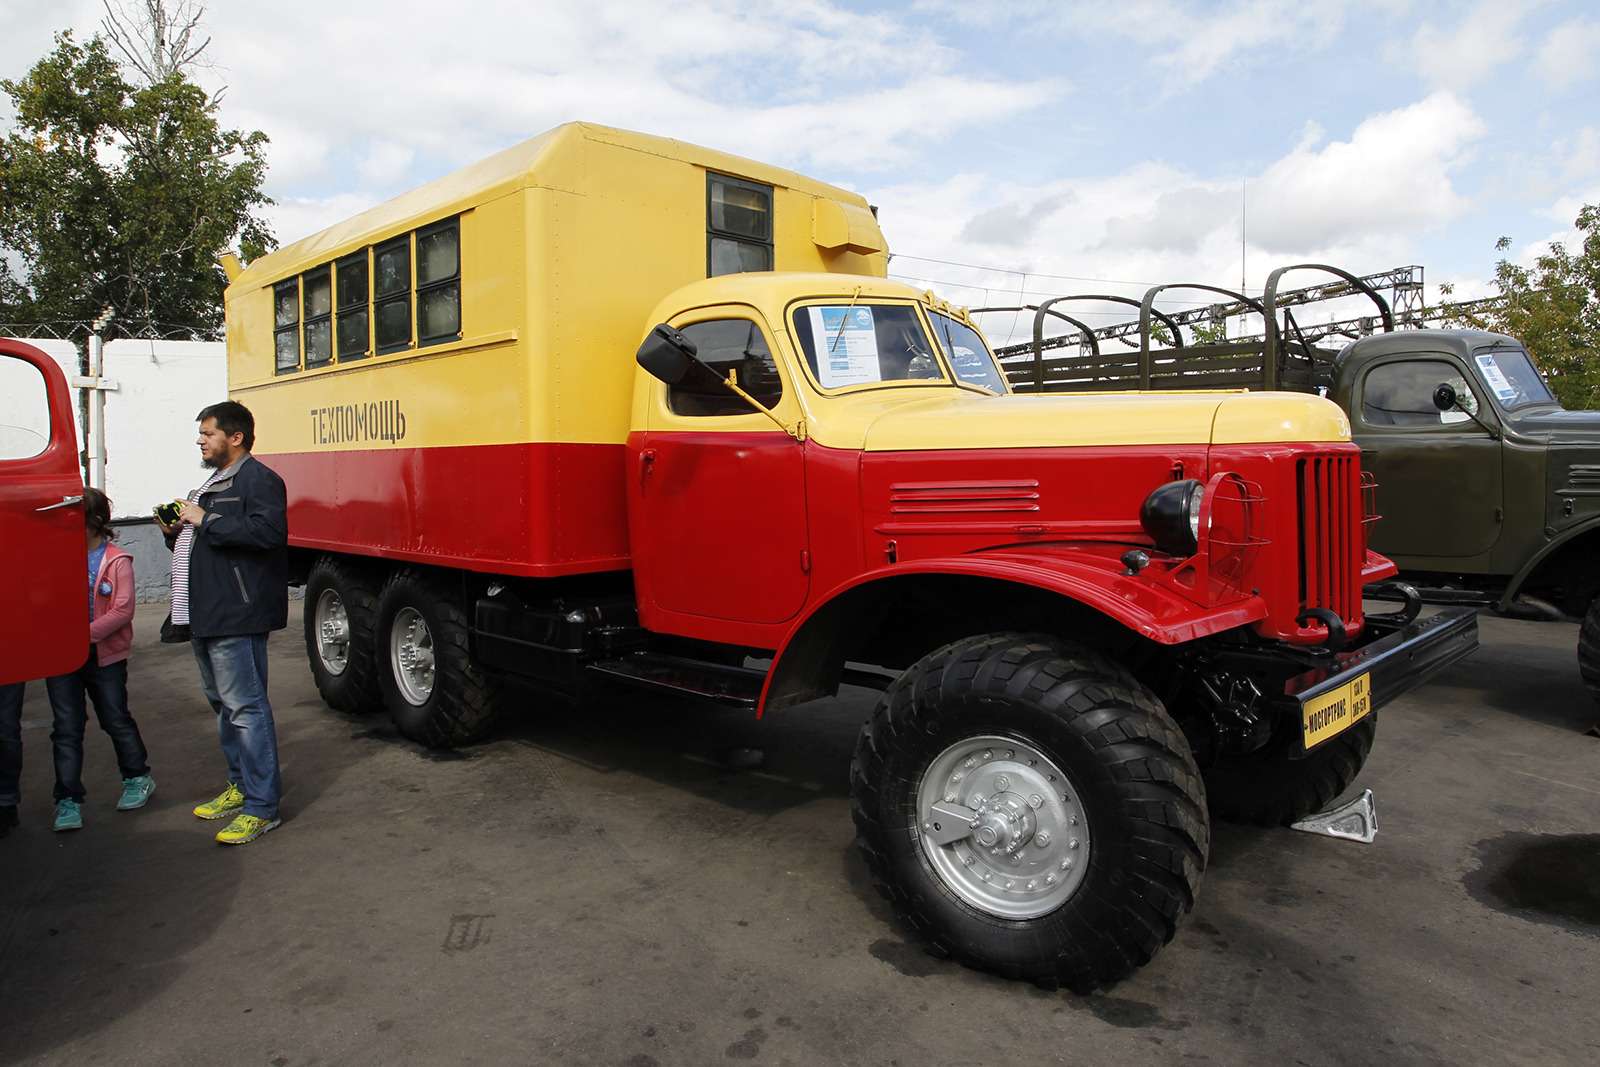 Автобусы нашего детства — выставка пассажирского транспорта — фото 792598